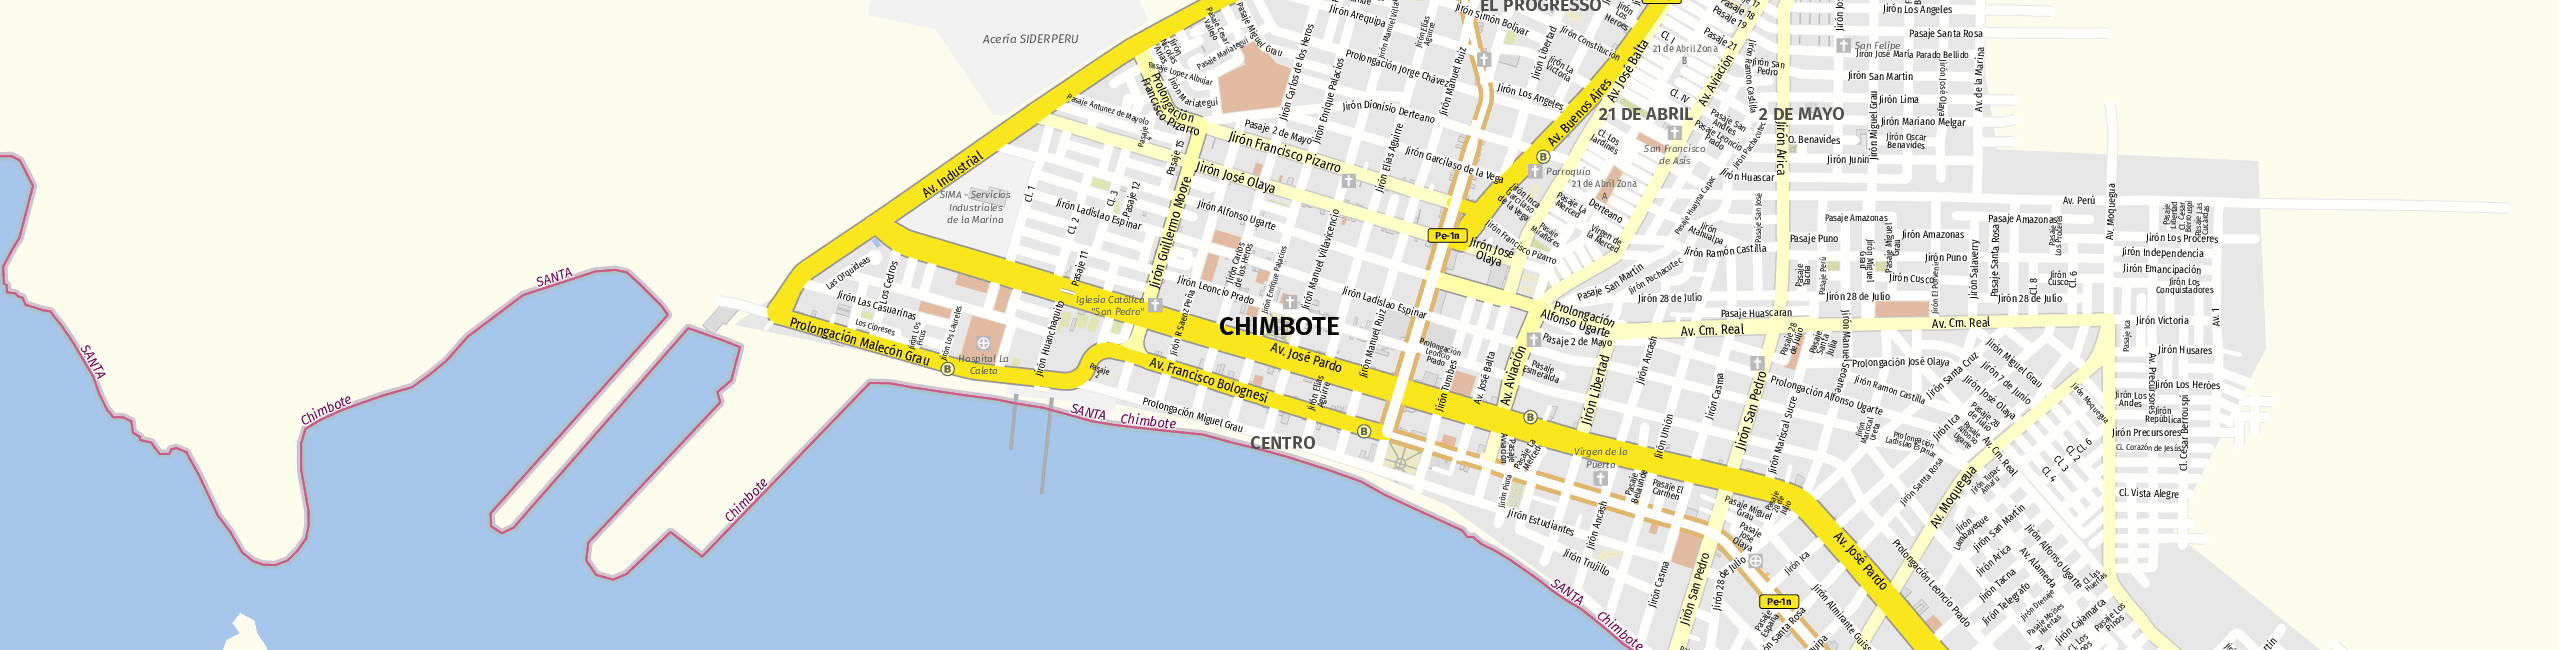 Stadtplan Chimbote zum Downloaden.